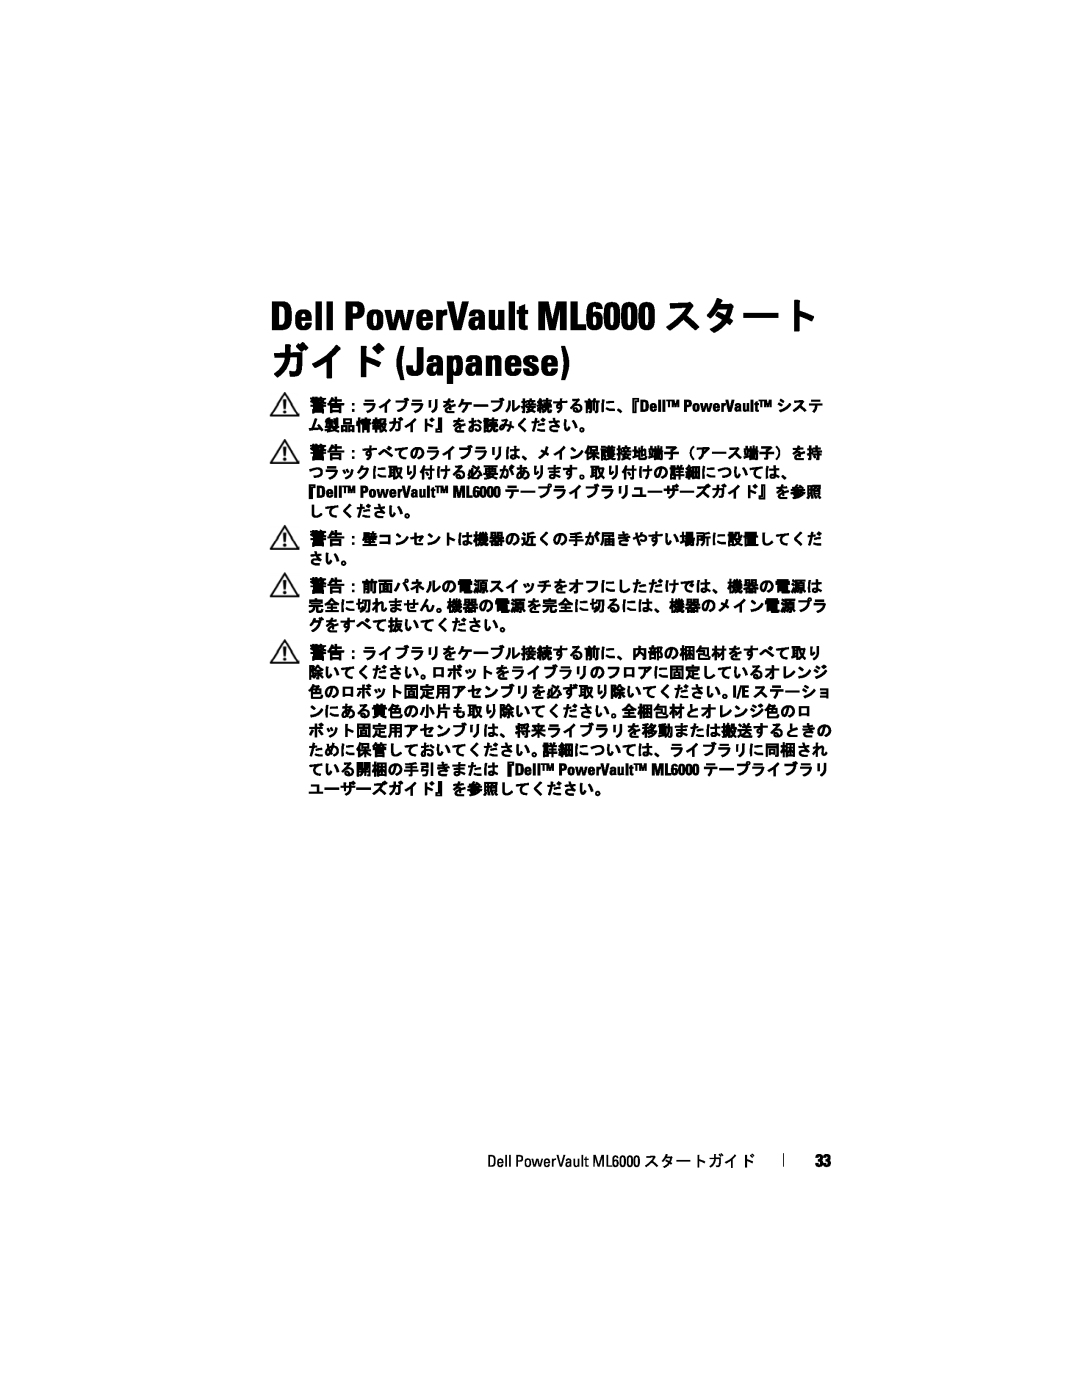 Dell manual Dell PowerVault ML6000 スタート ガイド Japanese, 警告：ライブラリをケーブル接続する前に、『Dell PowerVault システ ム製品情報ガイド』をお読みください。 